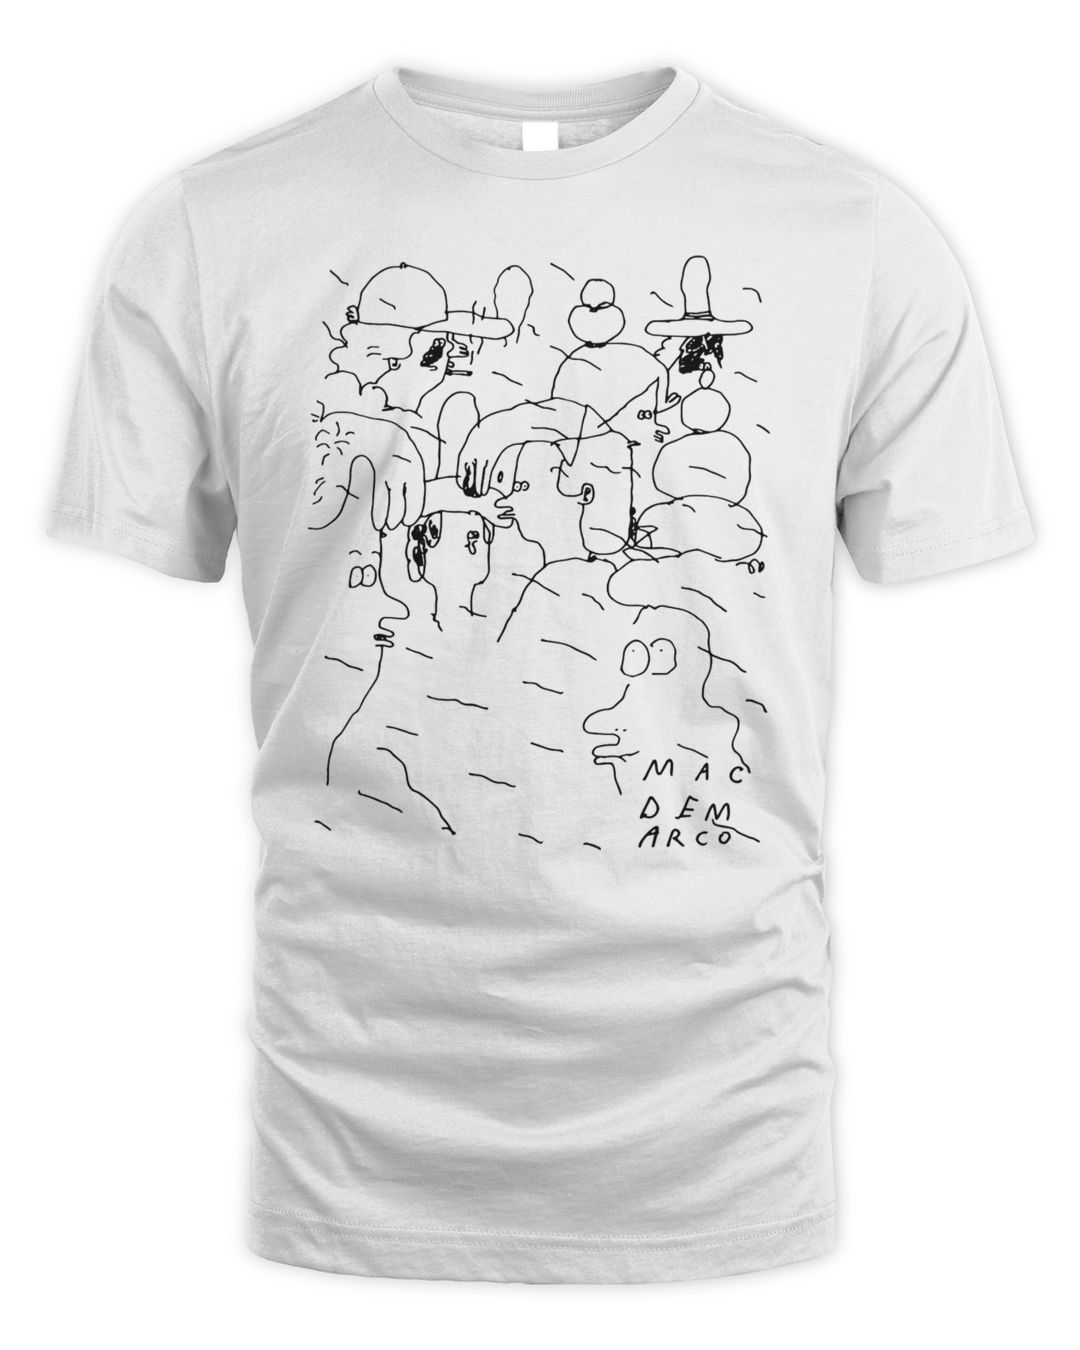 Mac Demarco Merch People Doodle Shirt O8s